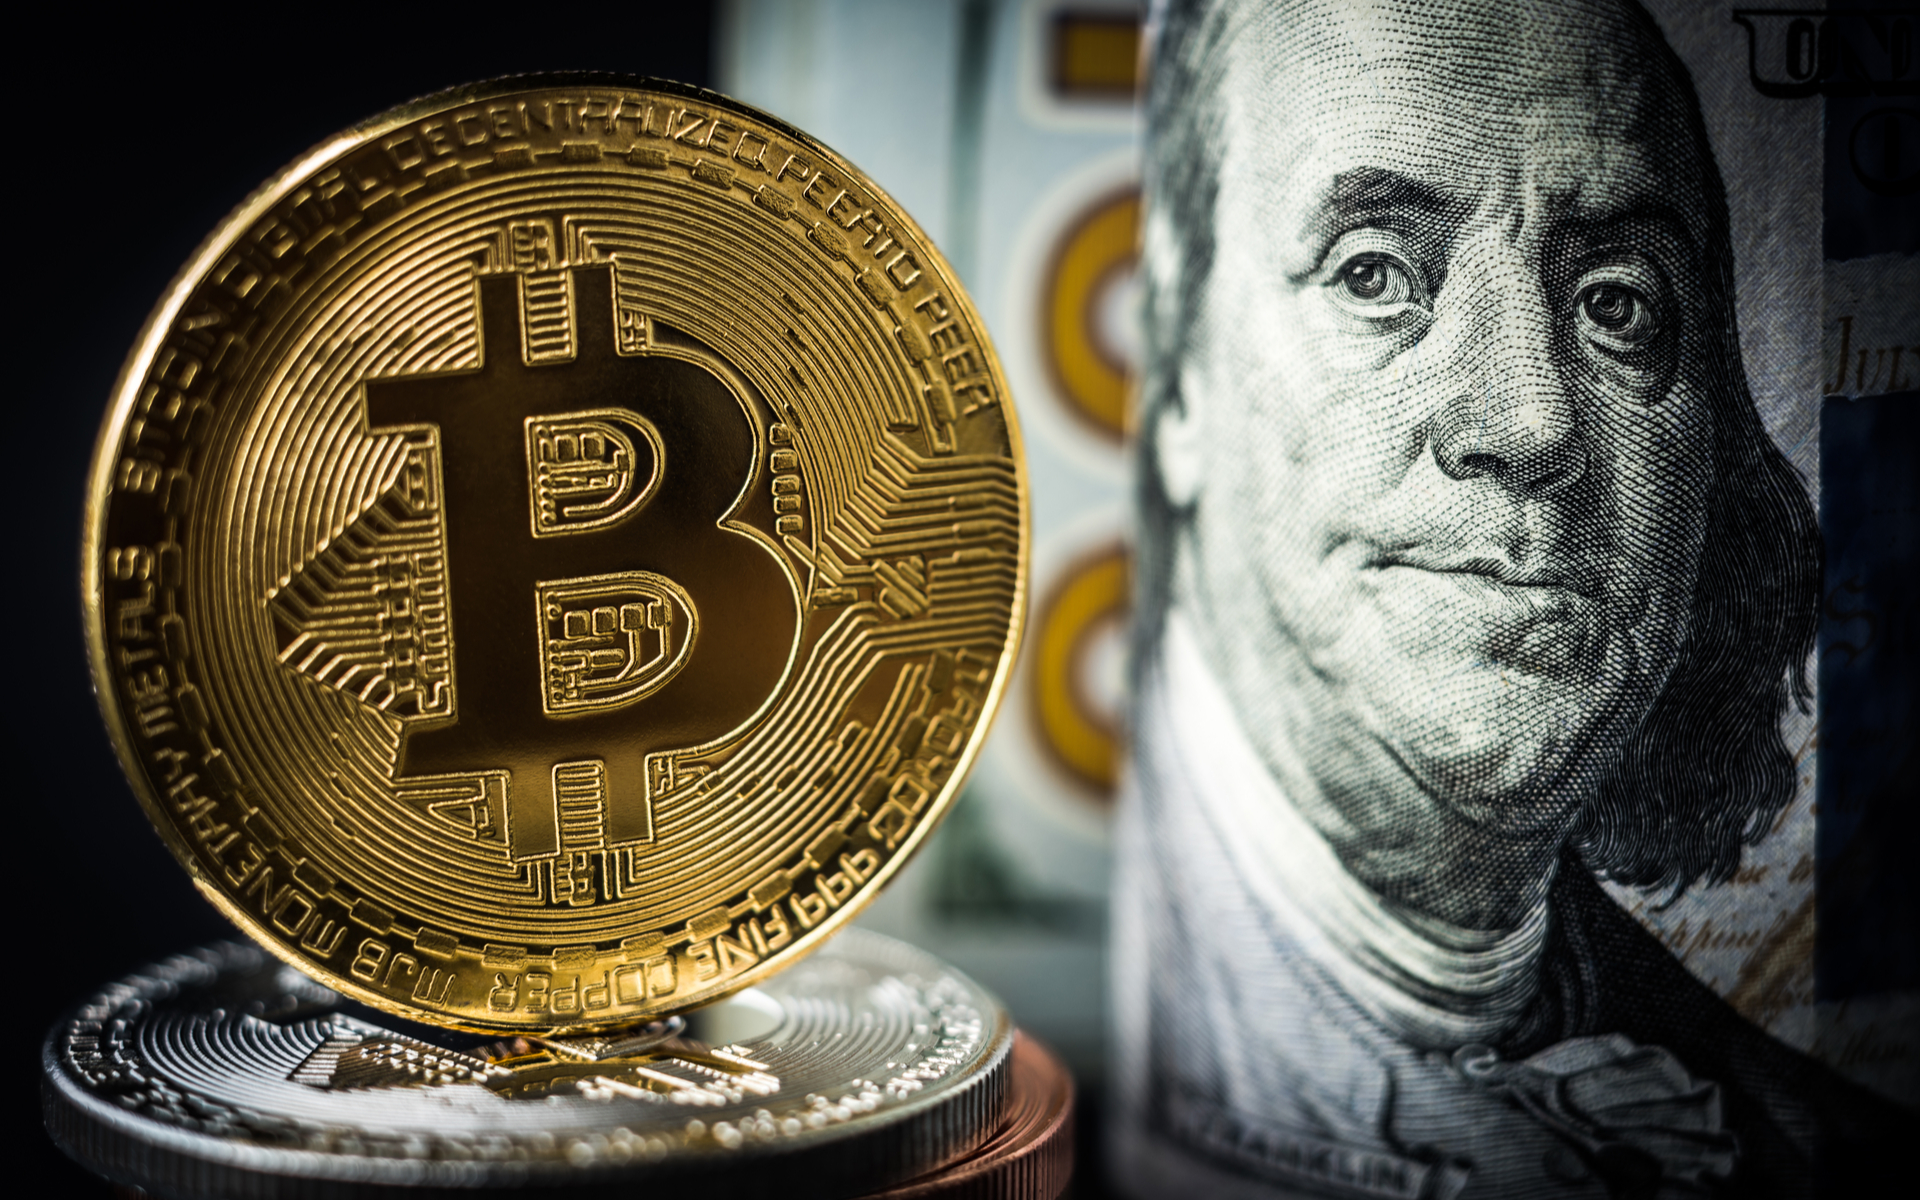 bakkt bitcoin cash-settled futures